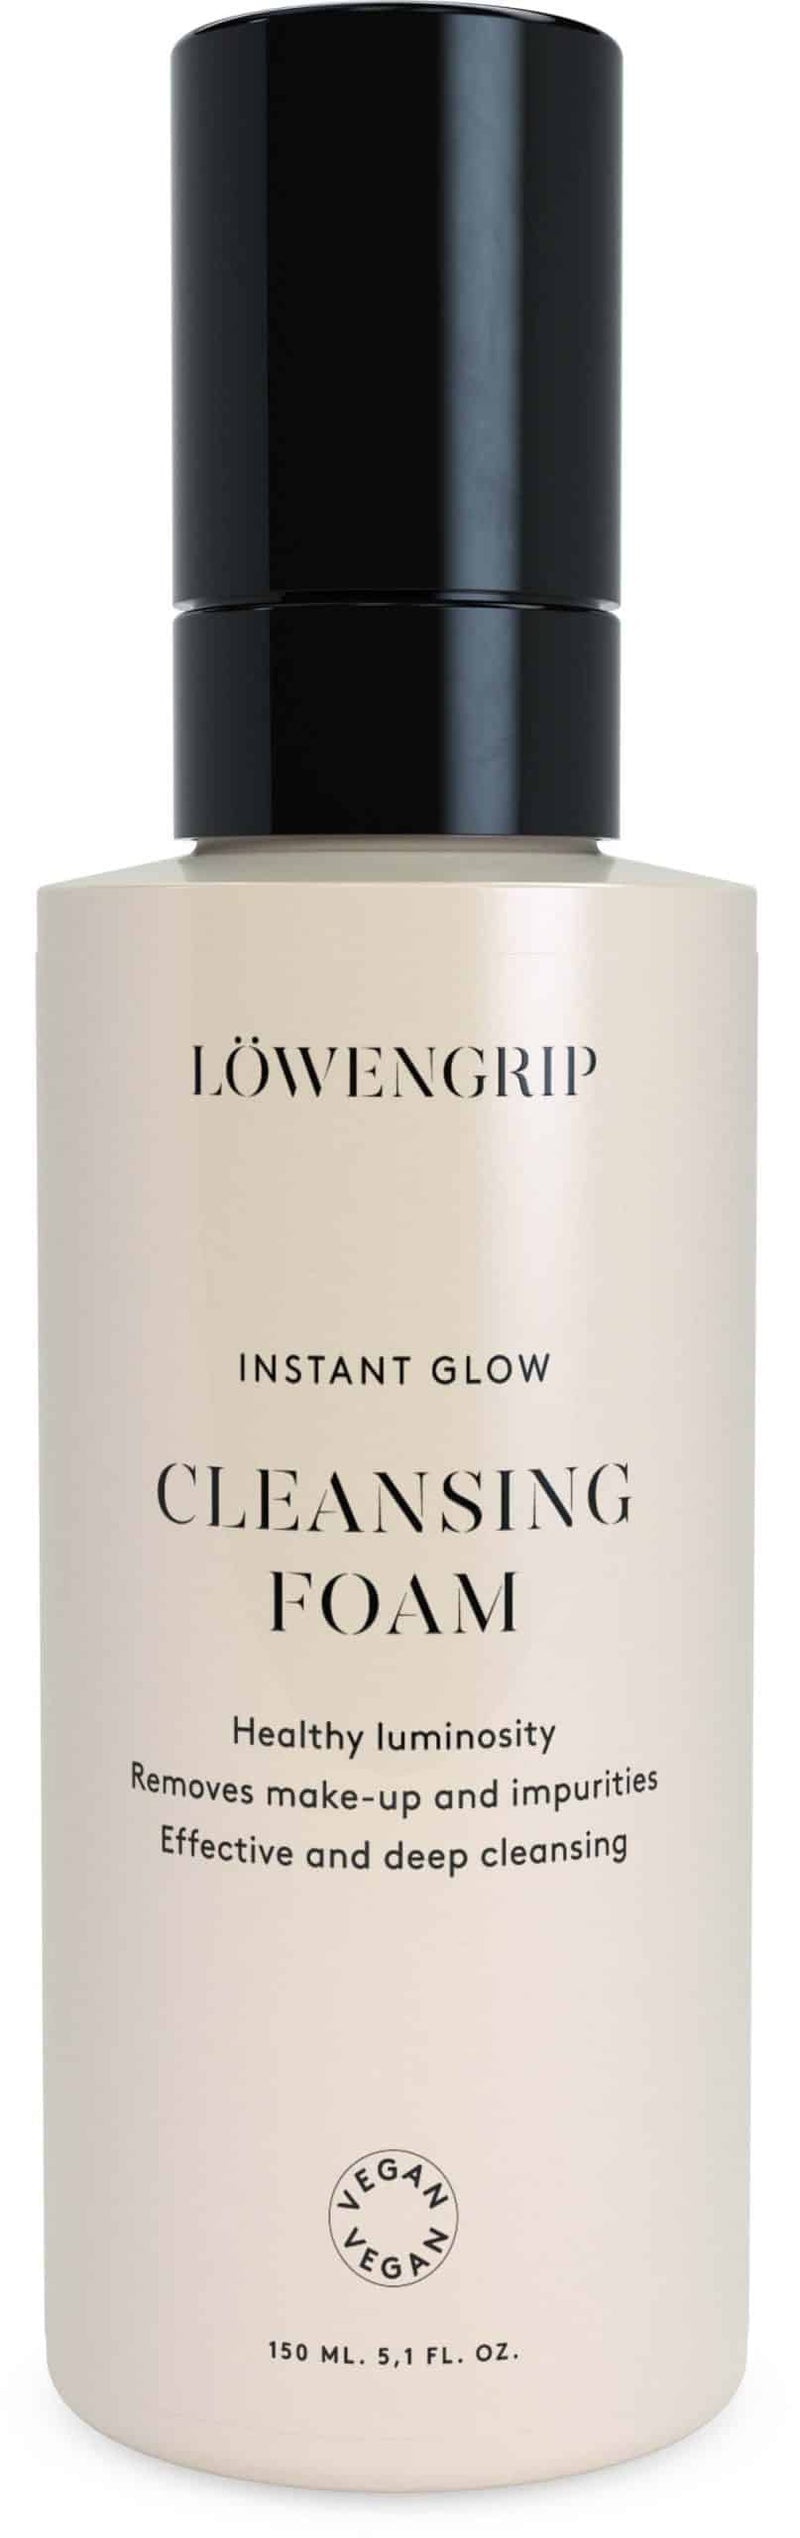 Löwengrip Instant Glow Cleansing Foam (150 ml)